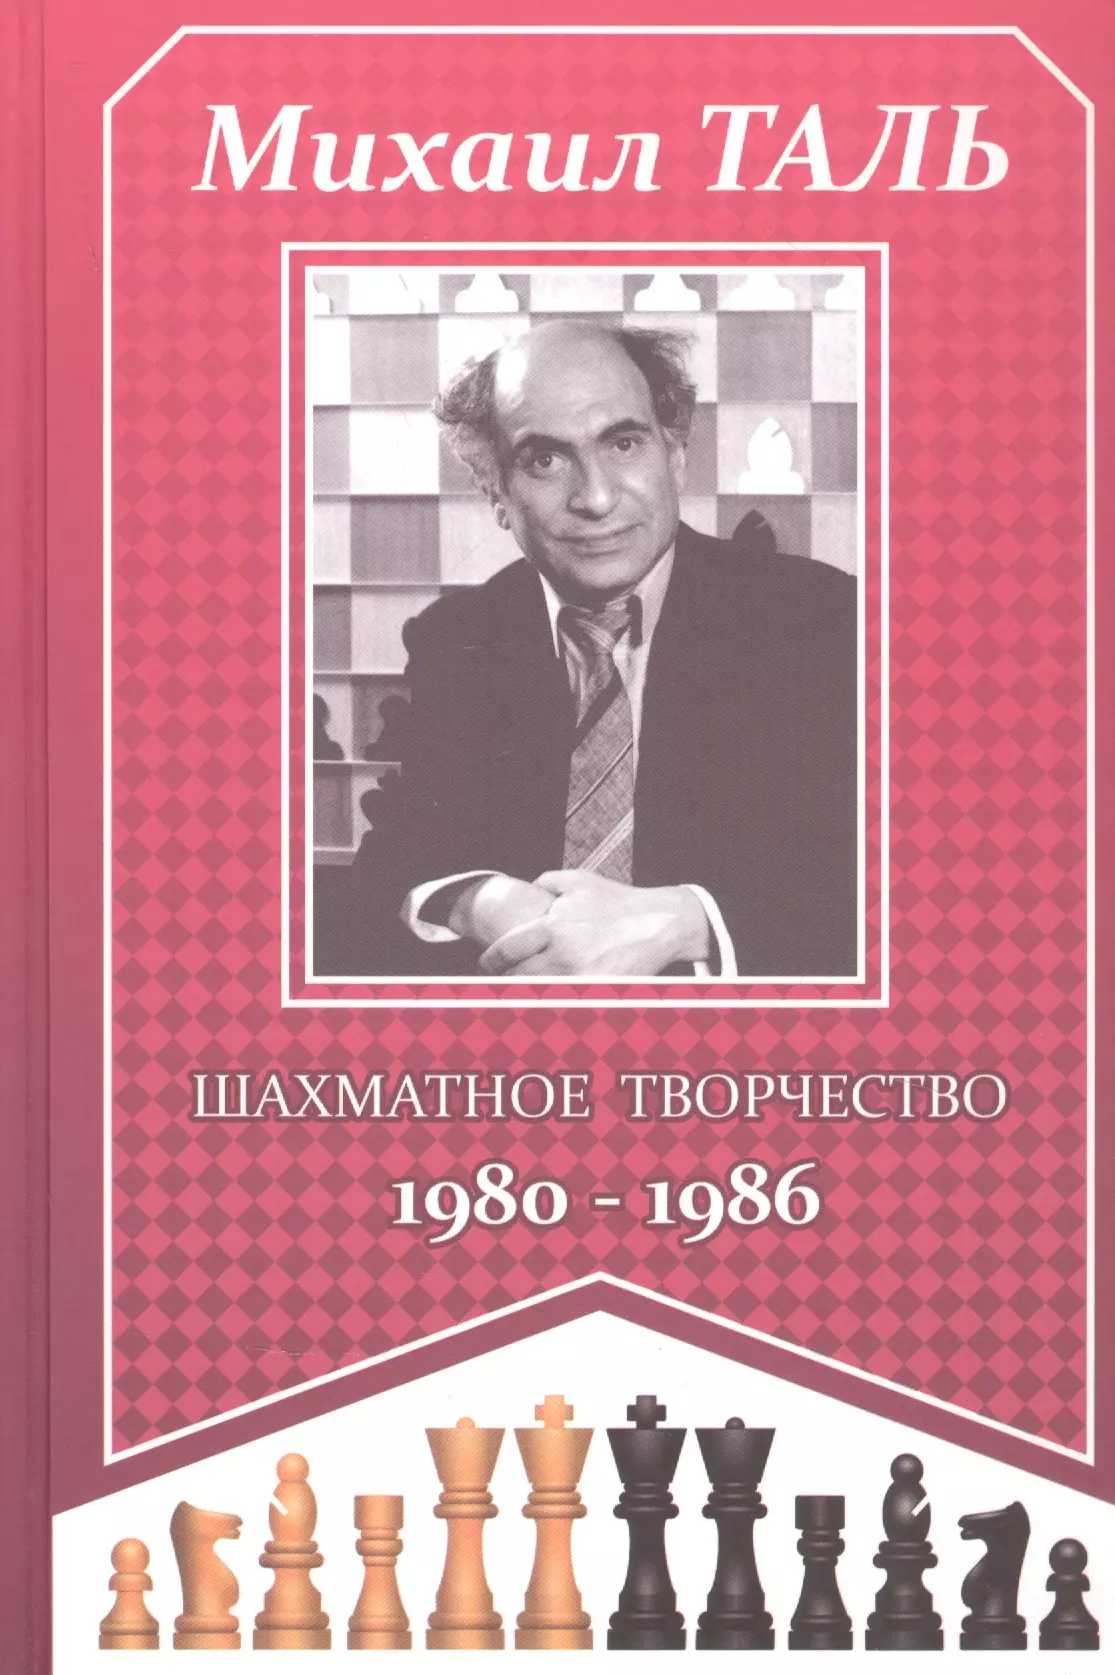 бессильный чемпион володин г в Таль Михаил Нехемьевич Михаил Таль. Шахматное творчество 1980-1986